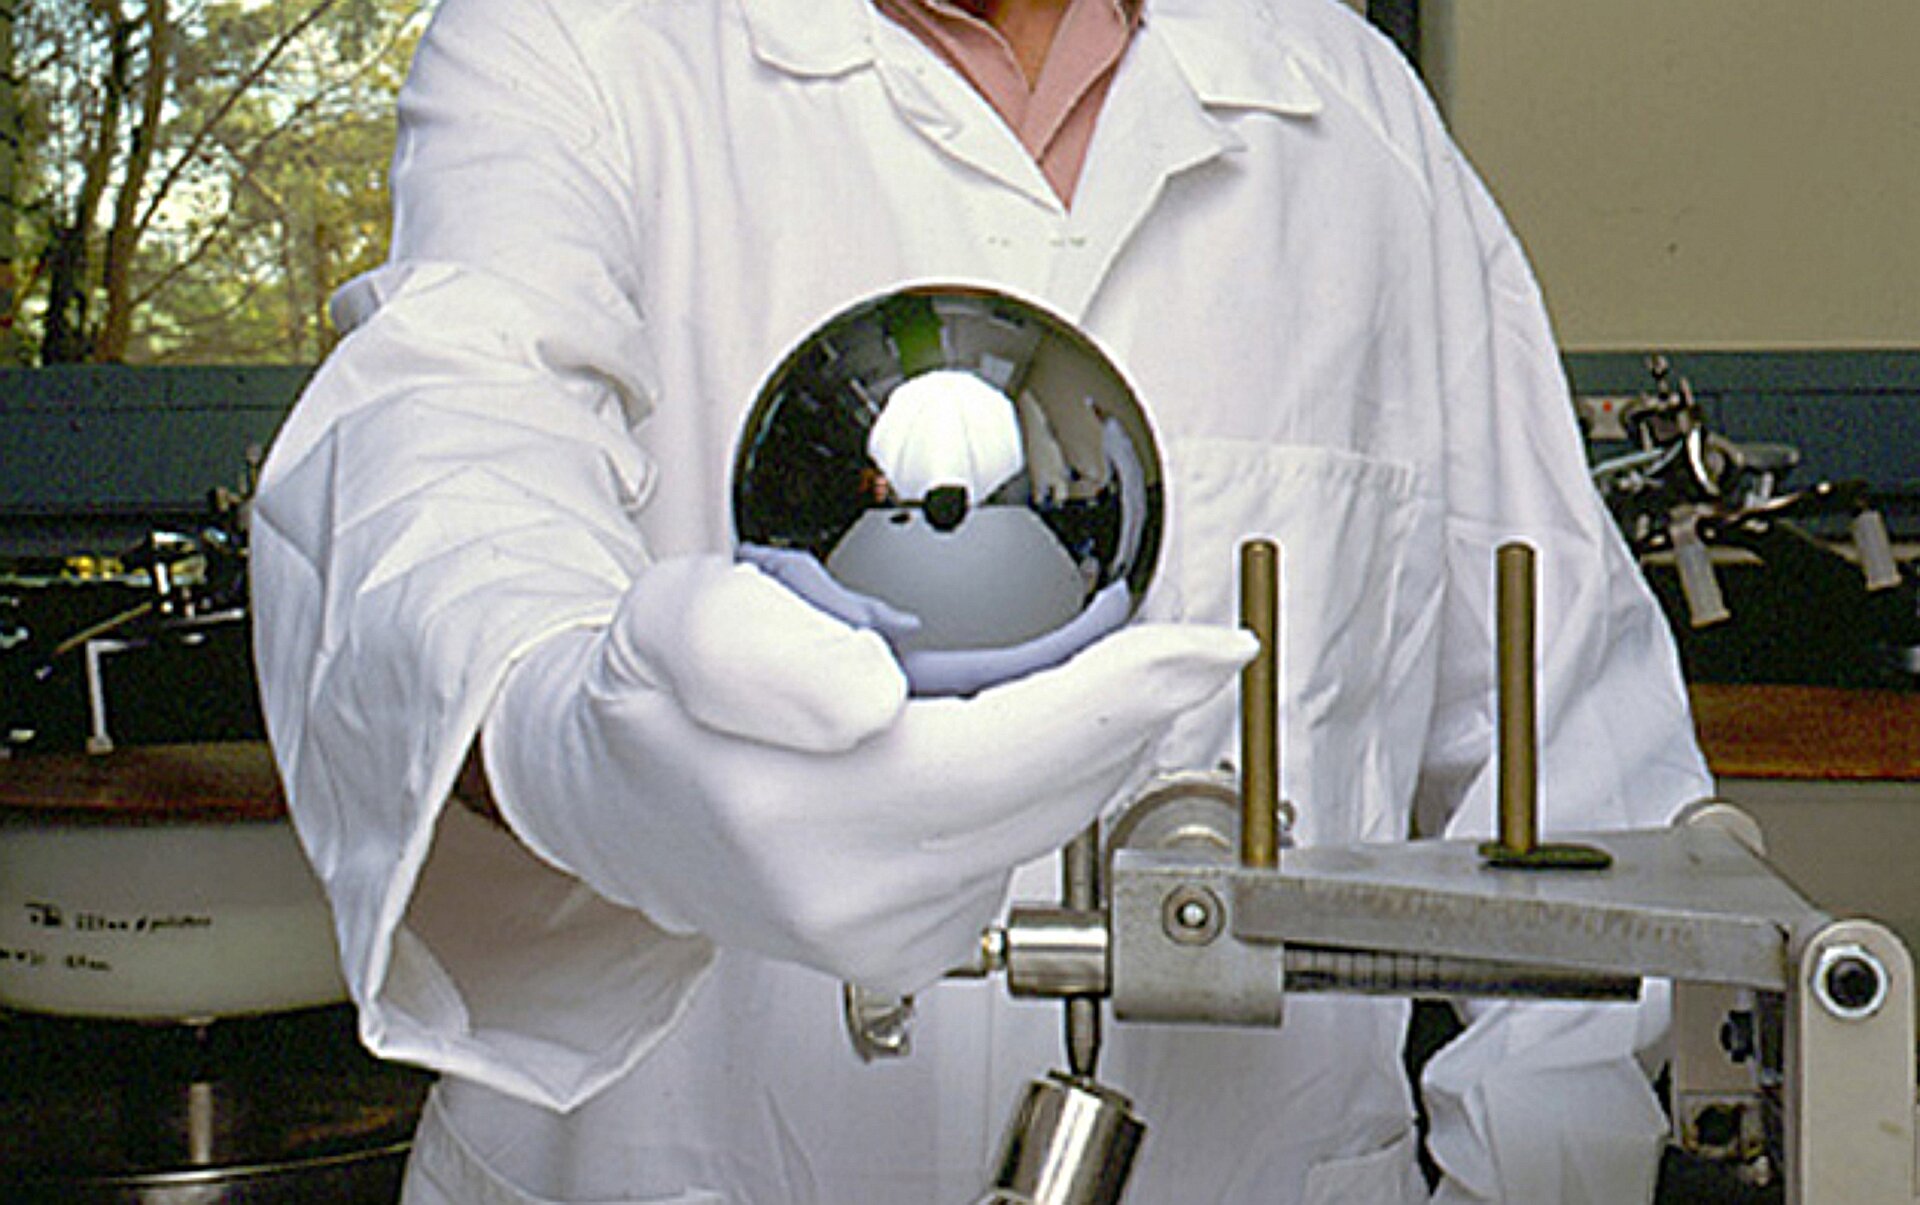 Zdjęcie przedstawia nowy wzorzec kilograma wykonany w ramach projektu Avogadro z monokryształu krzemu. Jest to jednocześnie najdoskonalsza wykonana przez człowieka kula na świecie, a jej średnica wynosi 93,75 mm. Idealnie gładka kula trzymana jest w dłoni w rękawiczce lateksowej przez naukowca, na tle pomieszczenia wypełnionego sprzętem badawczym.